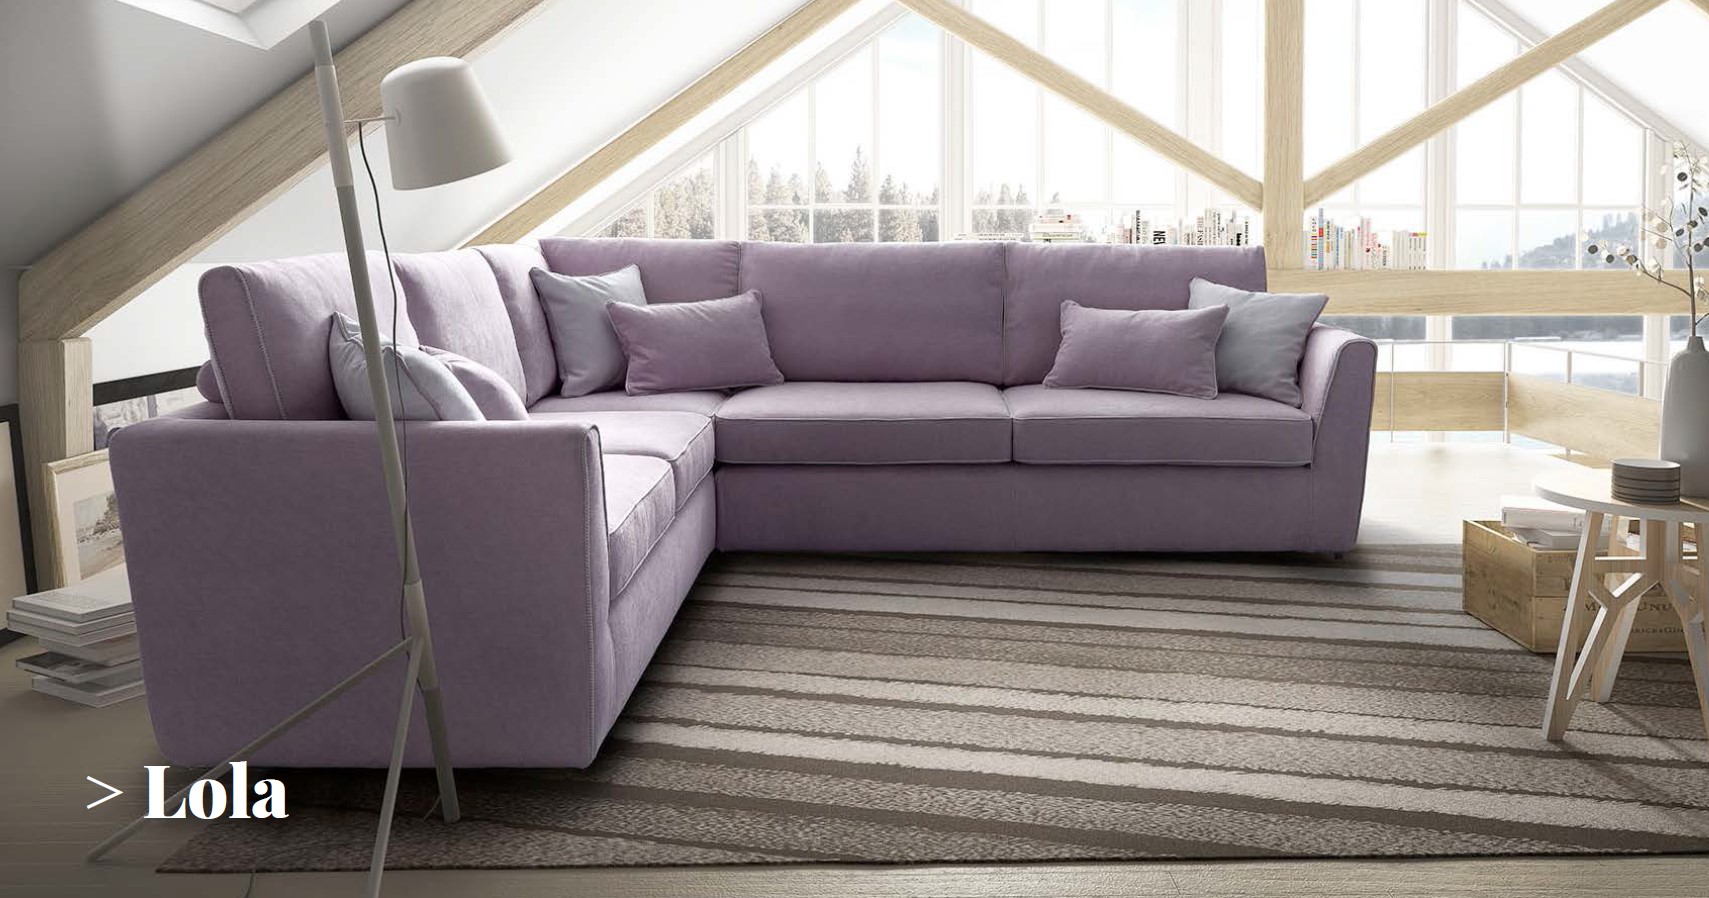 Il divano salvaspazio. Tutte le soluzioni LeComfort analizzate in dettaglio div2